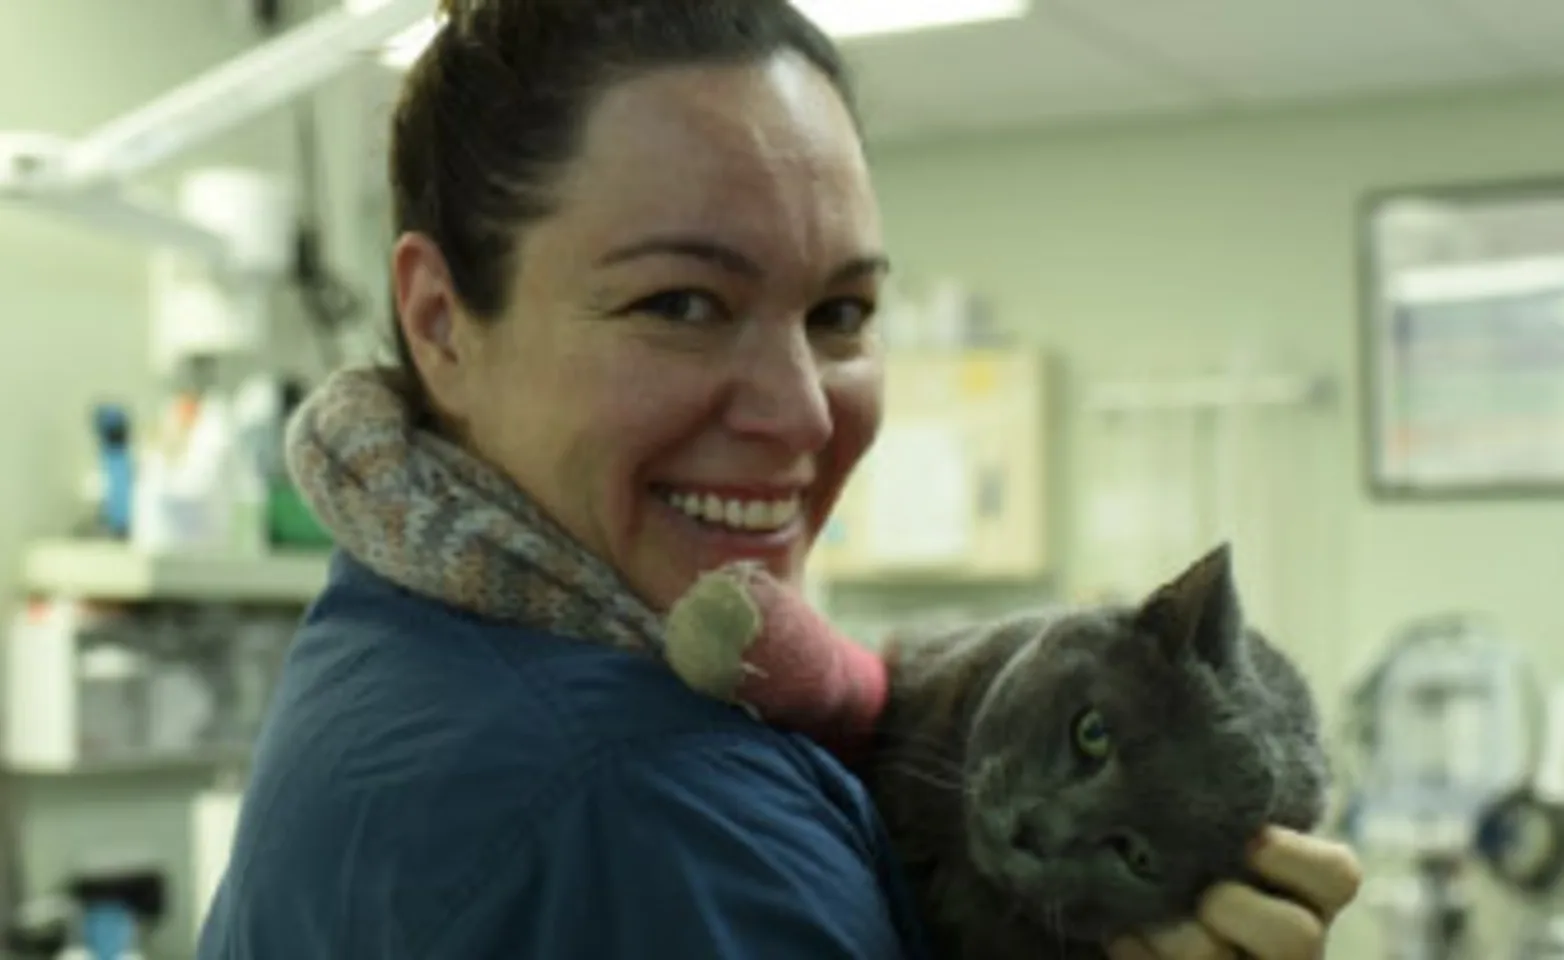 Internal Medicine Veterinarian at VESH holding a feline patient